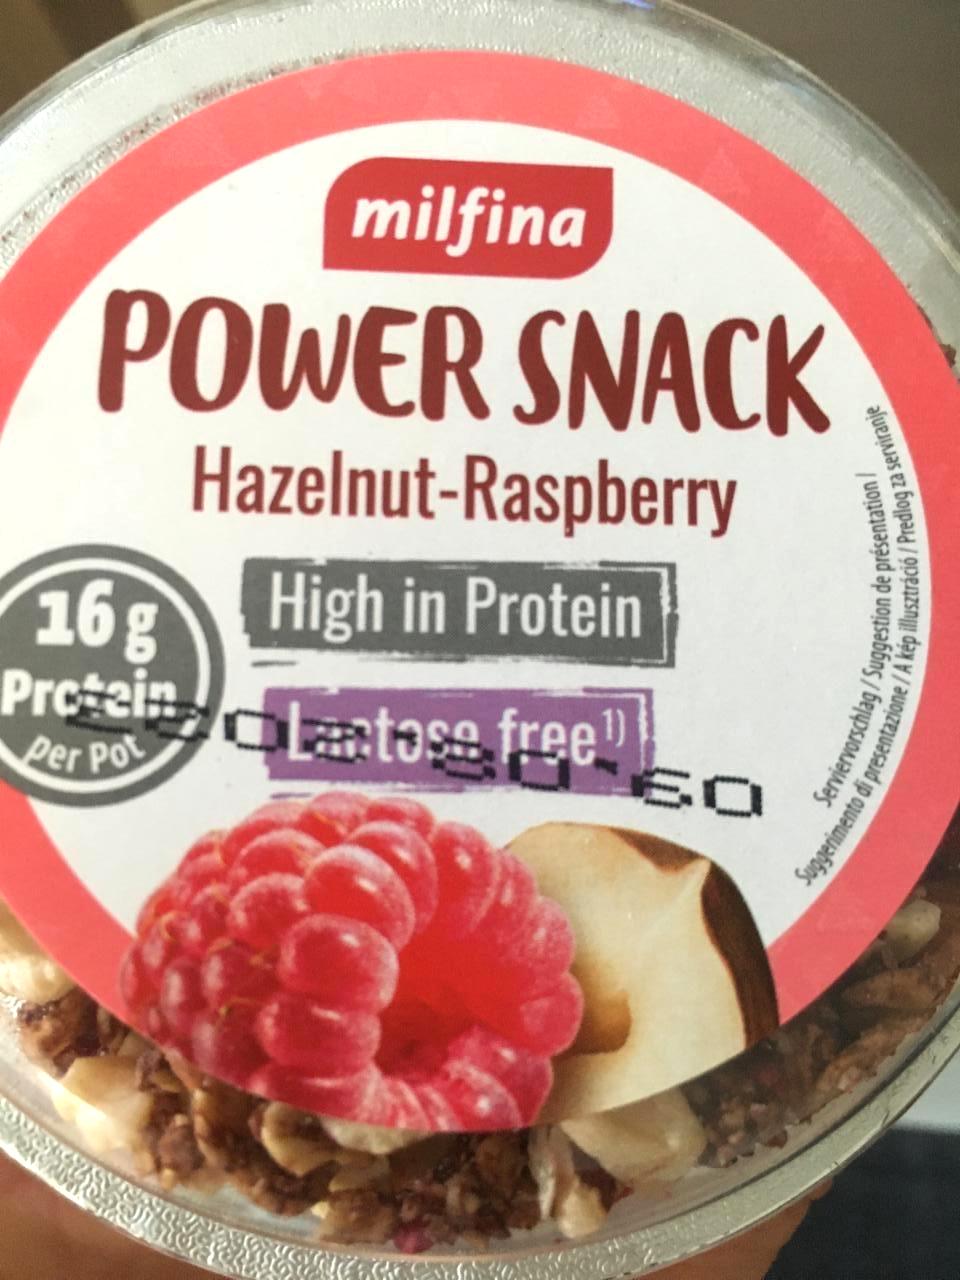 Képek - Power snack Hazelnut - Raspberry Milfina